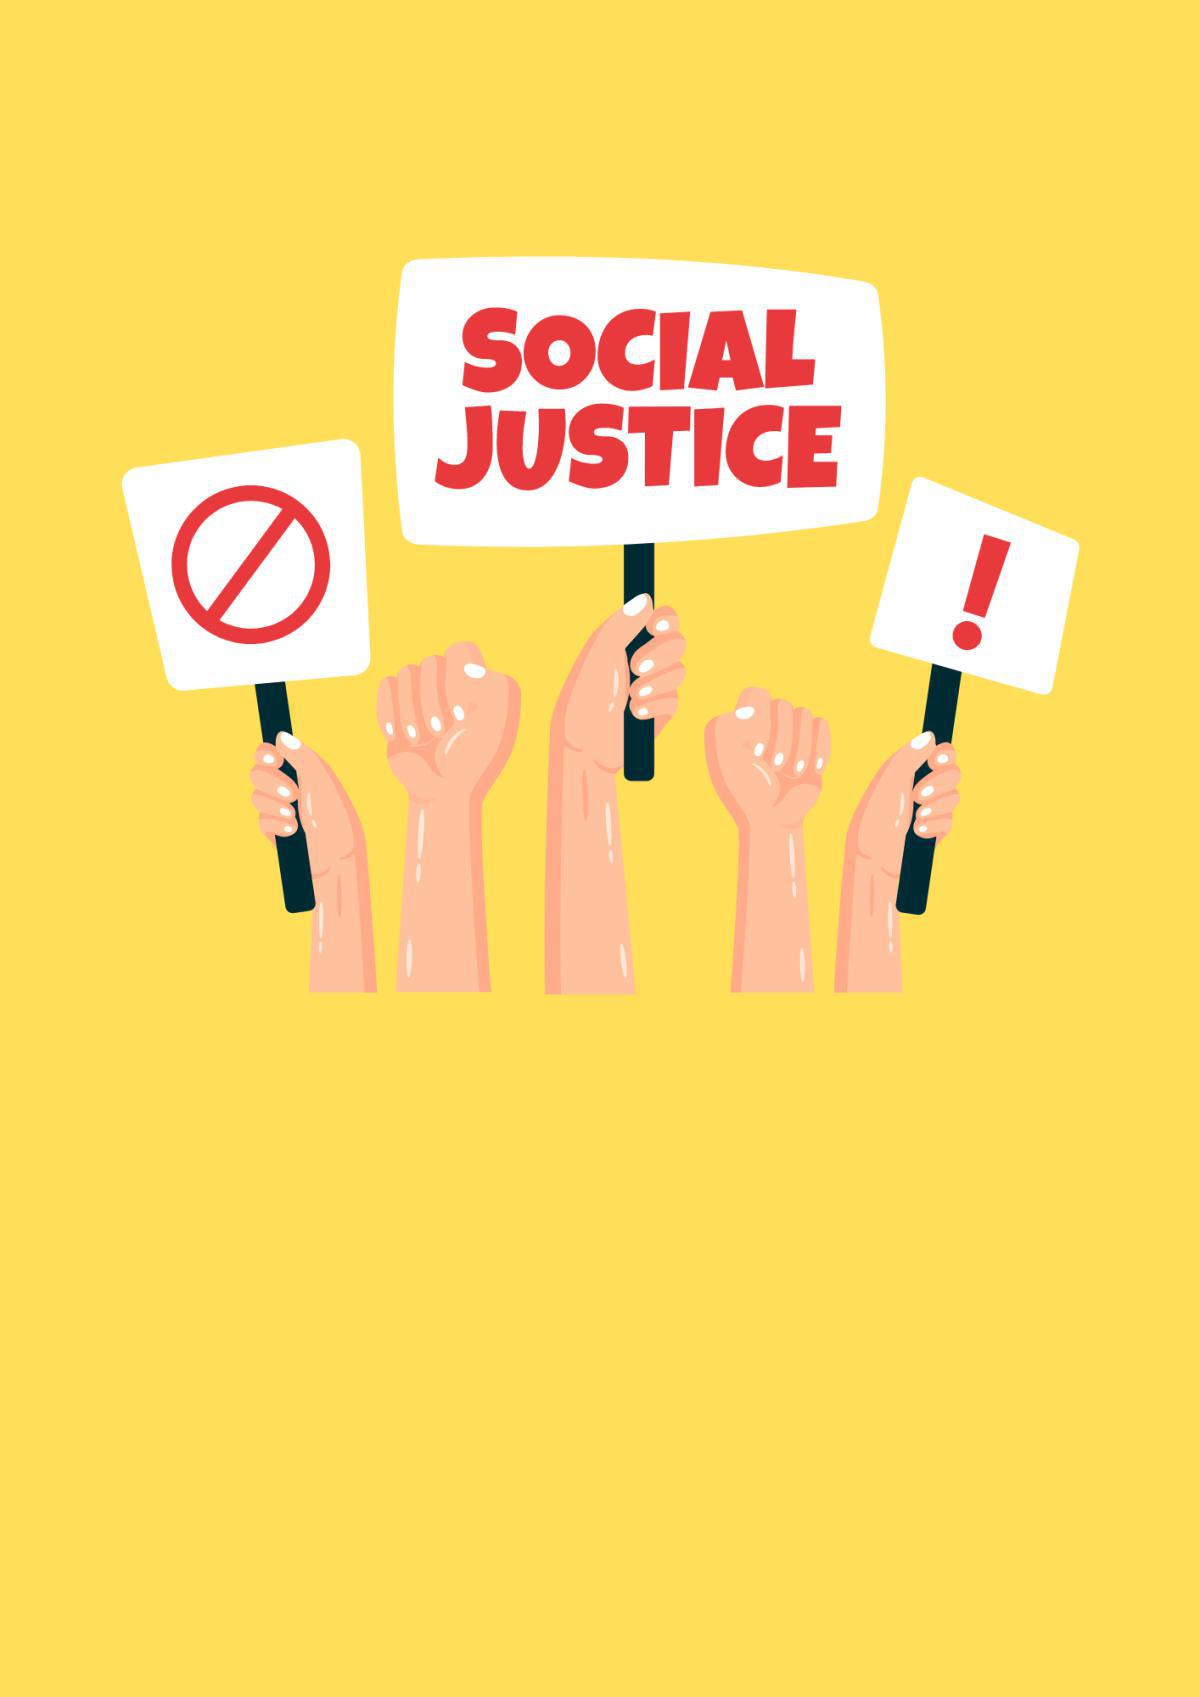 Accord intéressement : La CGT revendique plus de justice sociale